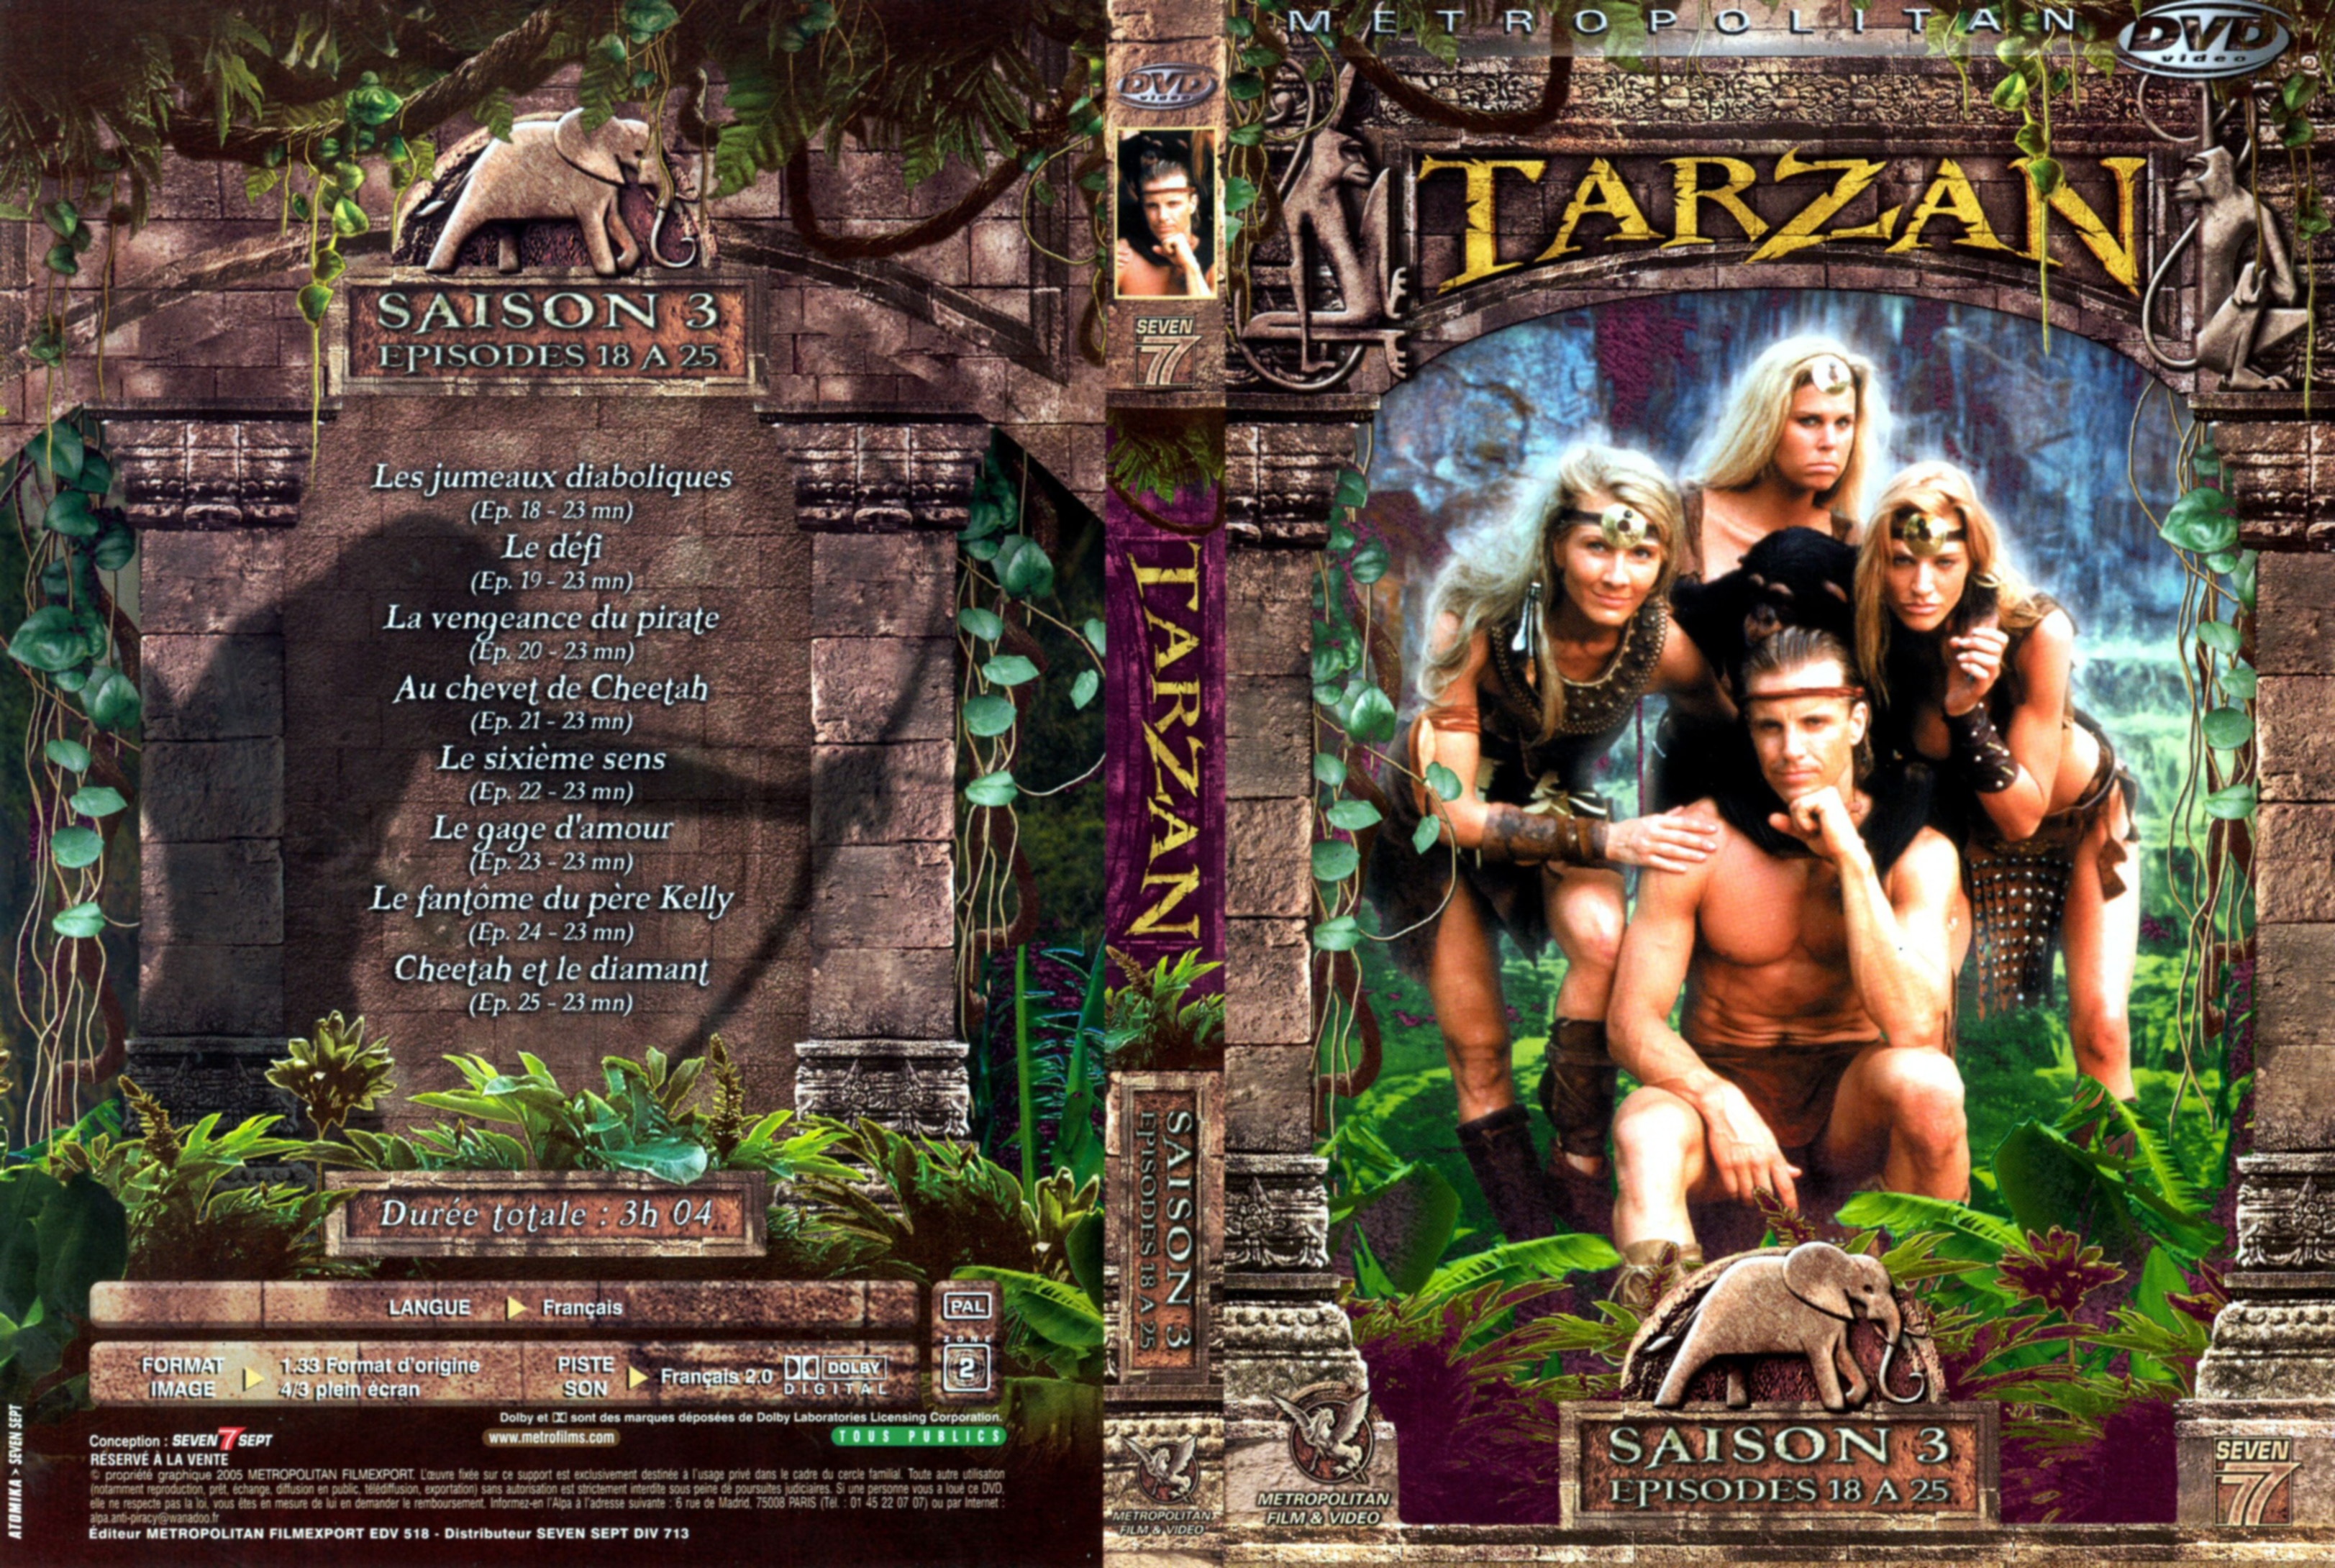 Jaquette DVD Tarzan saison 3 DVD 3